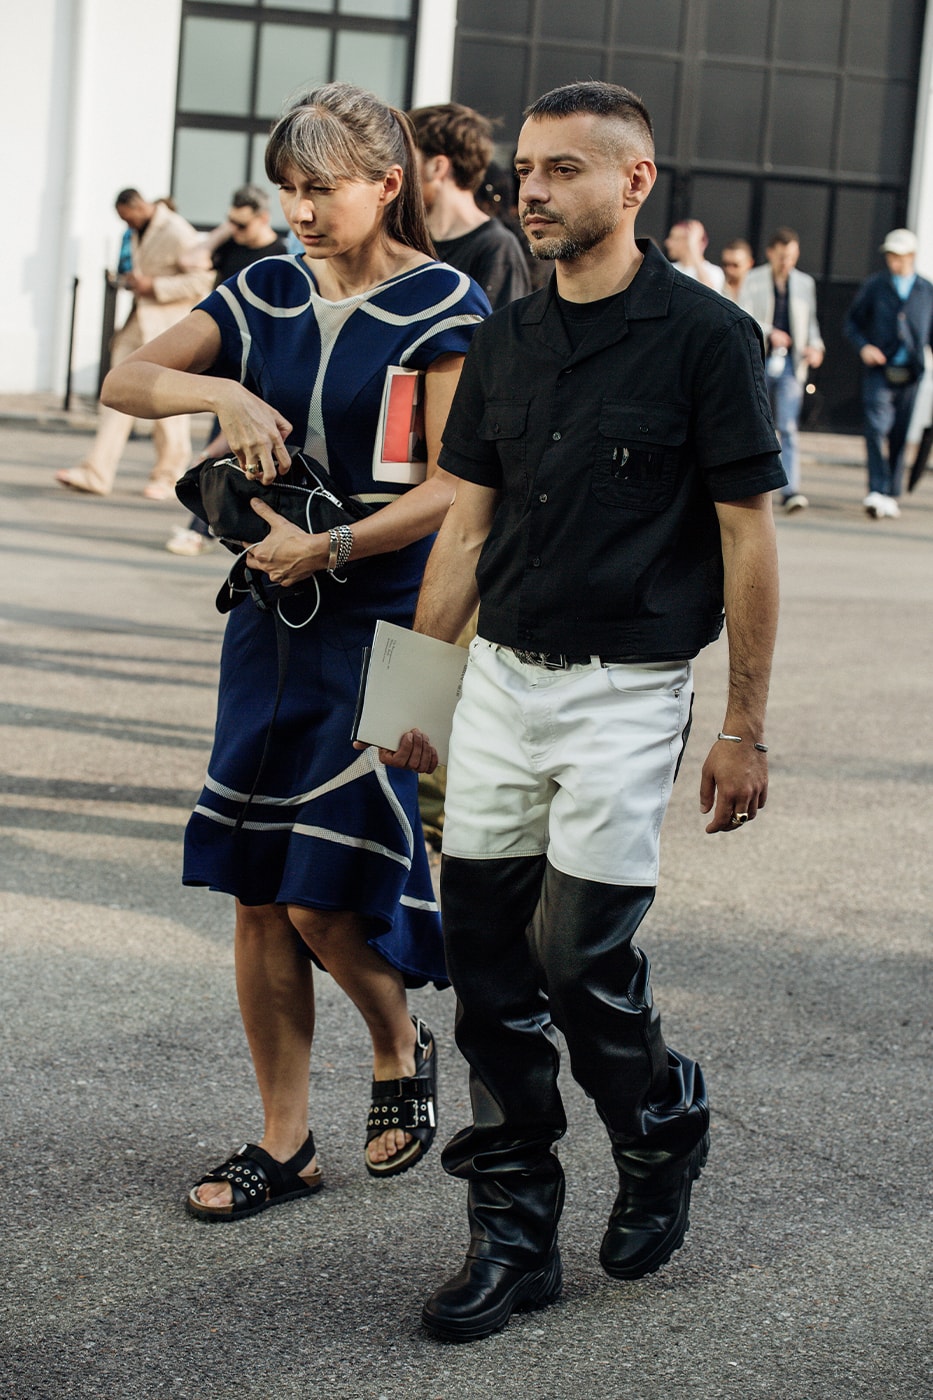 Tokyo Street Style: Men's Leggings Under Shorts